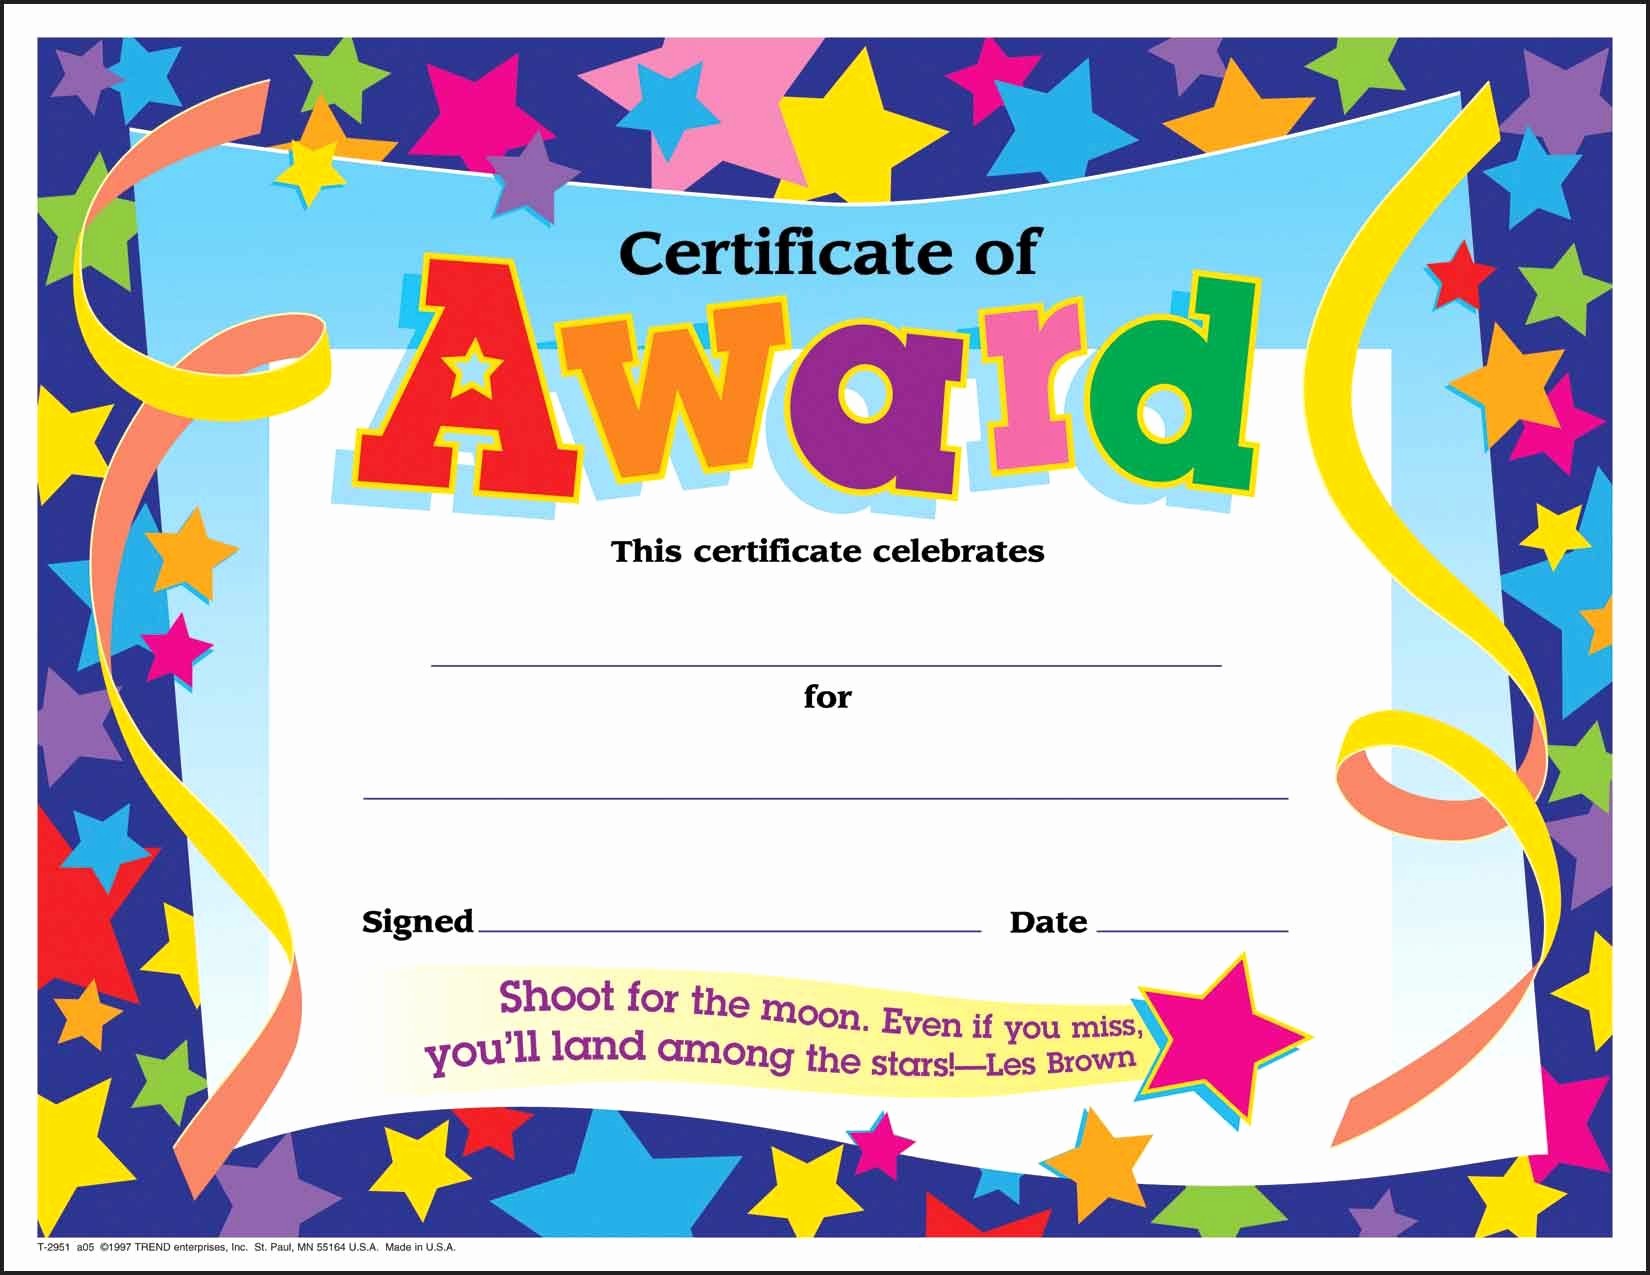 Certificate Of Participation for Kids Unique Certificate Template for Kids Free Certificate Templates